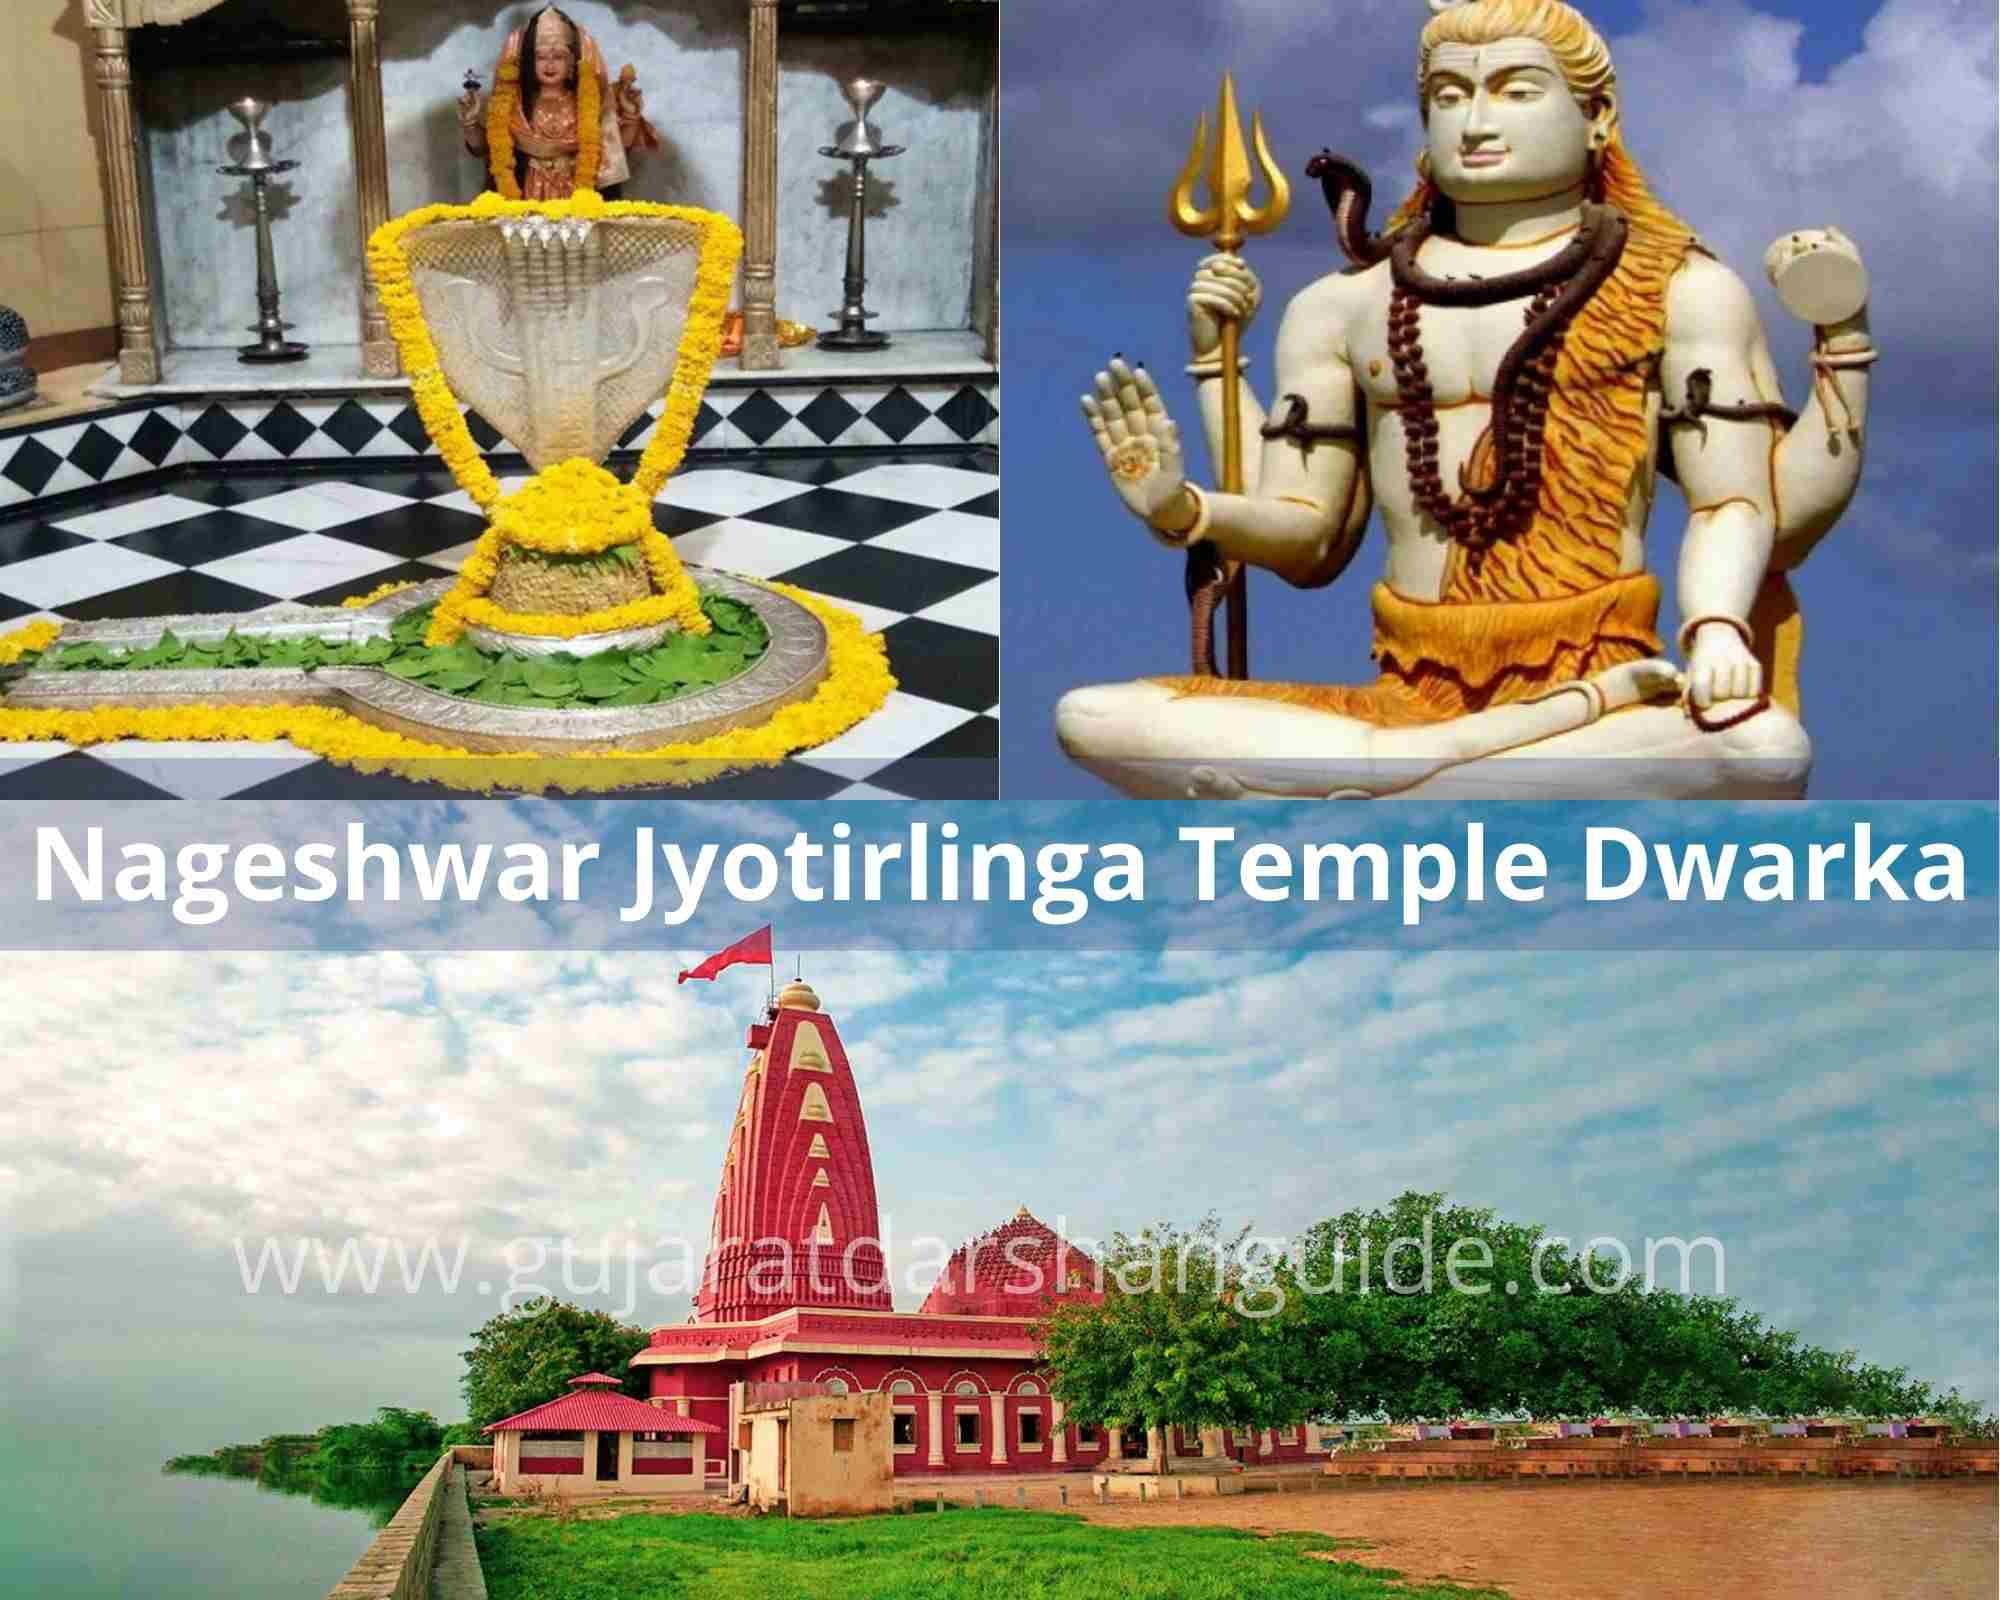 Nageshwar Jyotirlinga Temple Dwarka